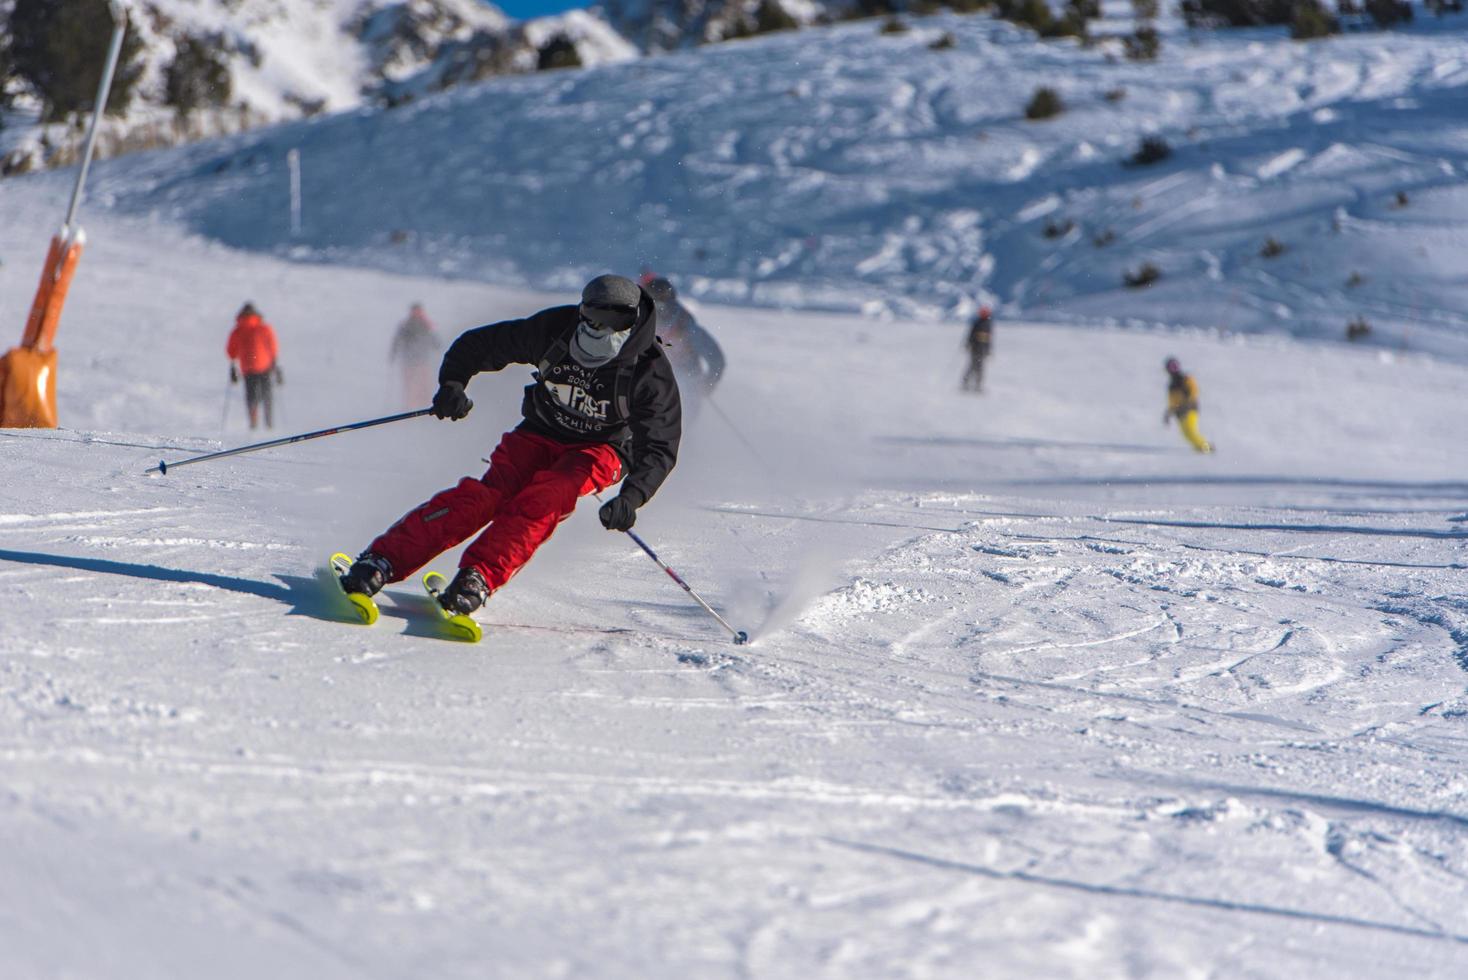 grandvalira, andorre. 11 décembre 2021 jeune homme skiant dans les pyrénées à la station de ski de grandvalira en andorre en temps de covid19 photo